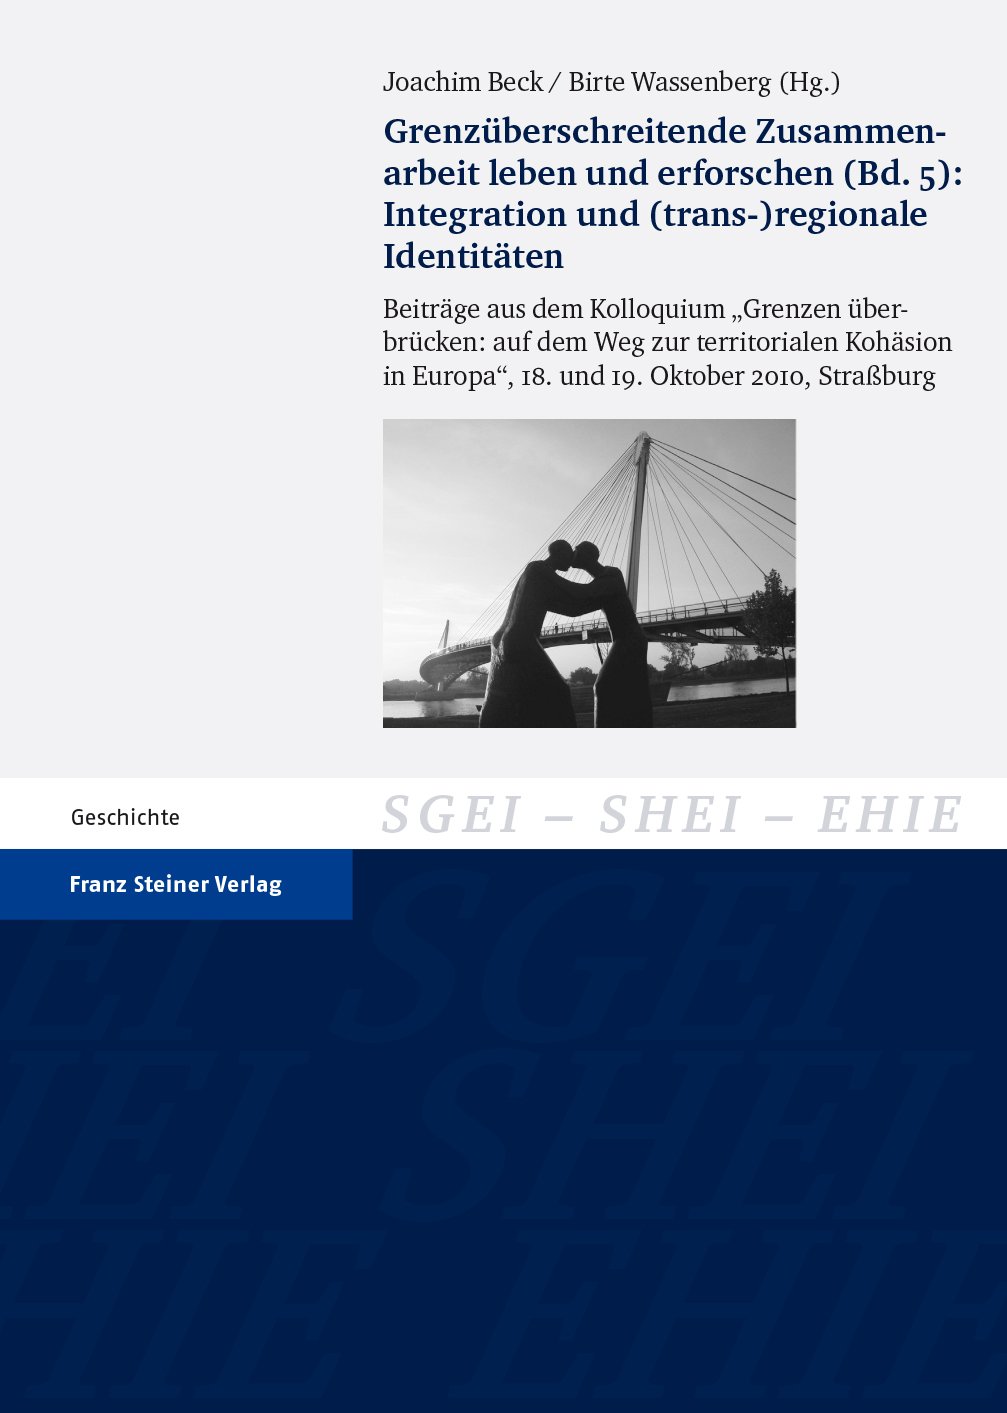 Grenzüberschreitende Zusammenarbeit leben und erforschen. Bd. 5: Integration und (trans-)regionale Identitäten